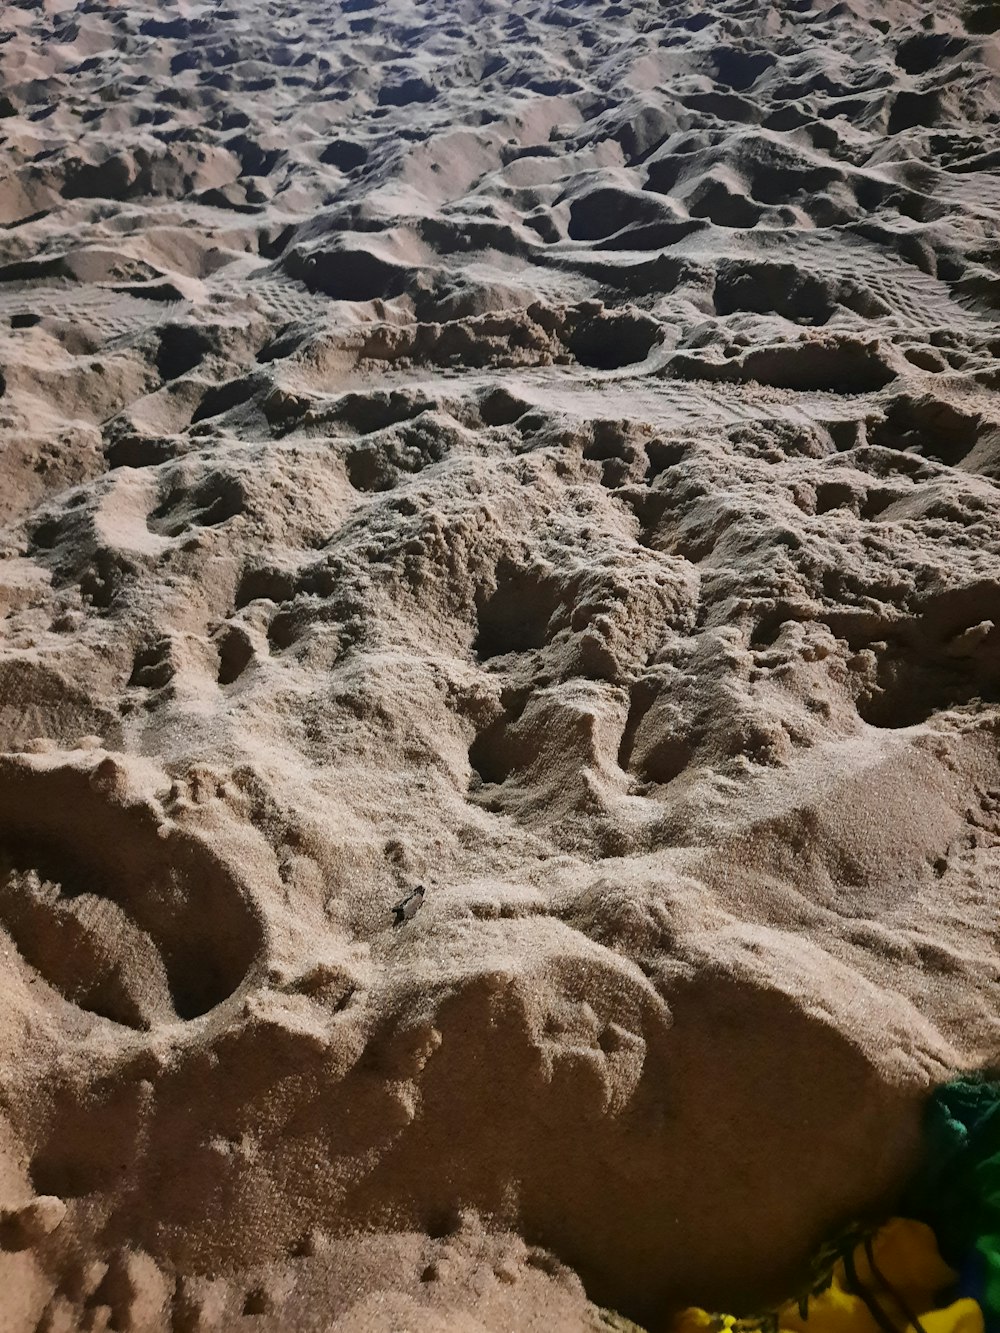 brown sand on brown sand